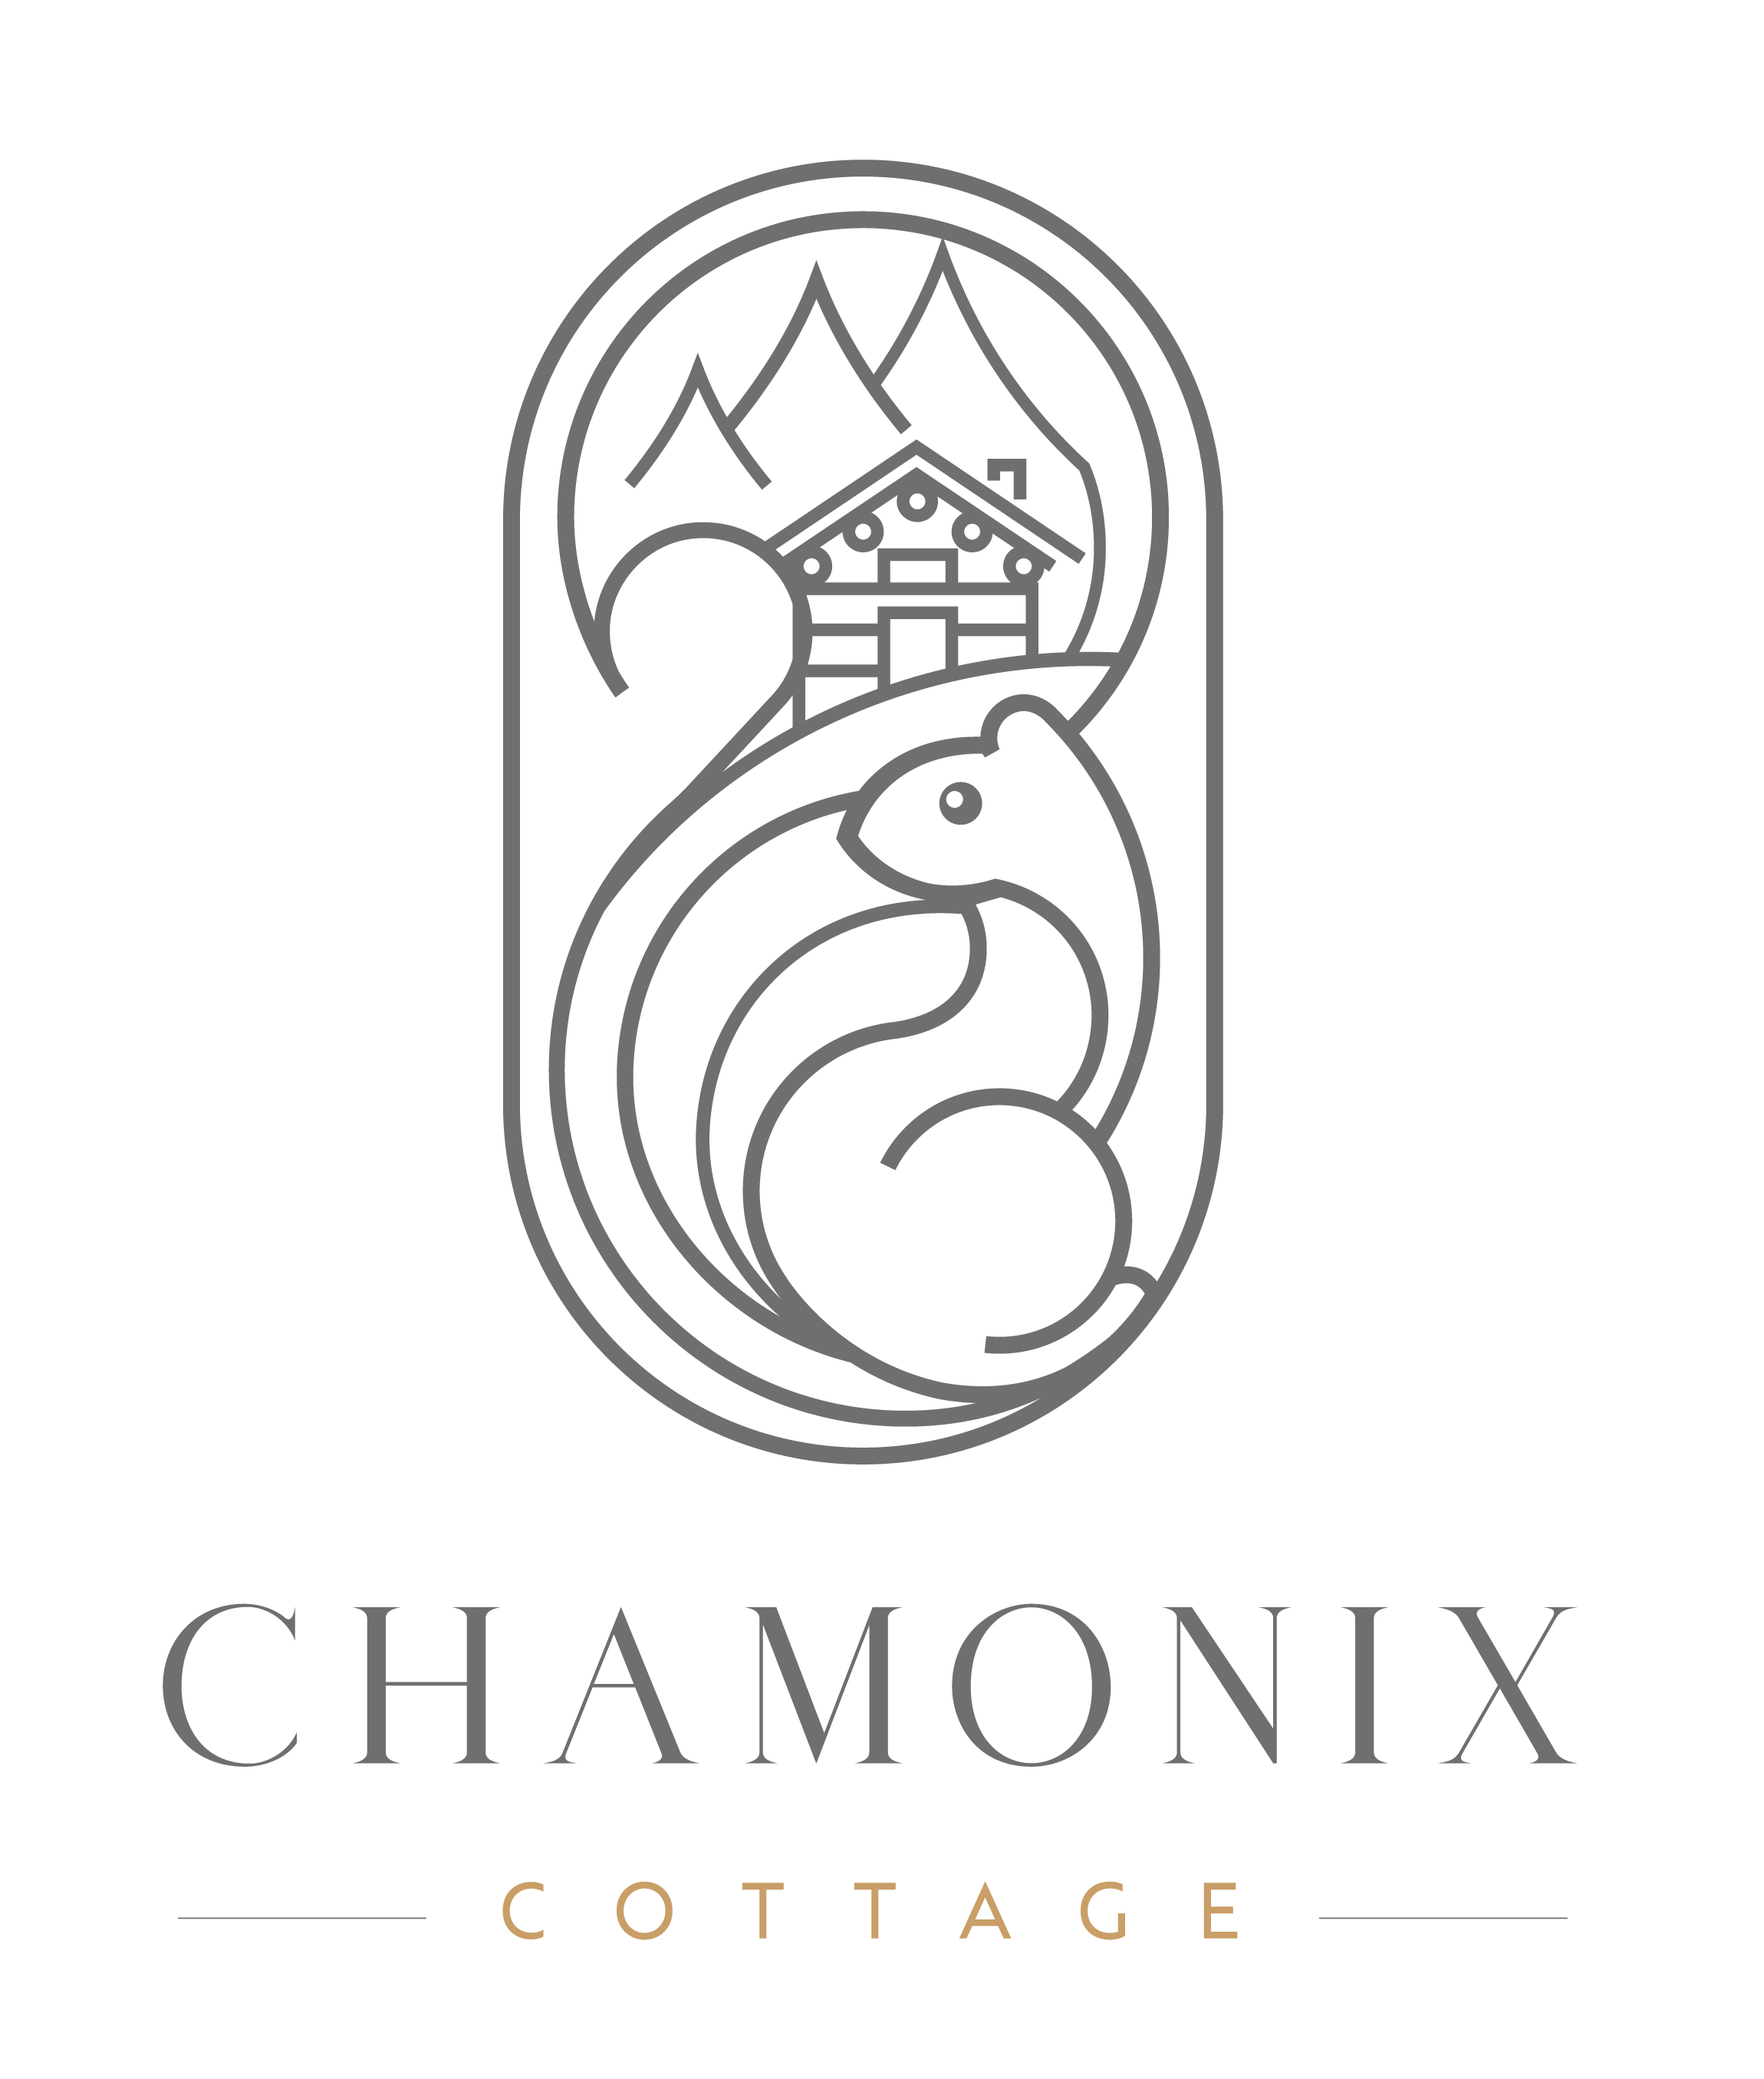 Chamonix Cottage | Chamonix-Cottage - Chamonix Cottage